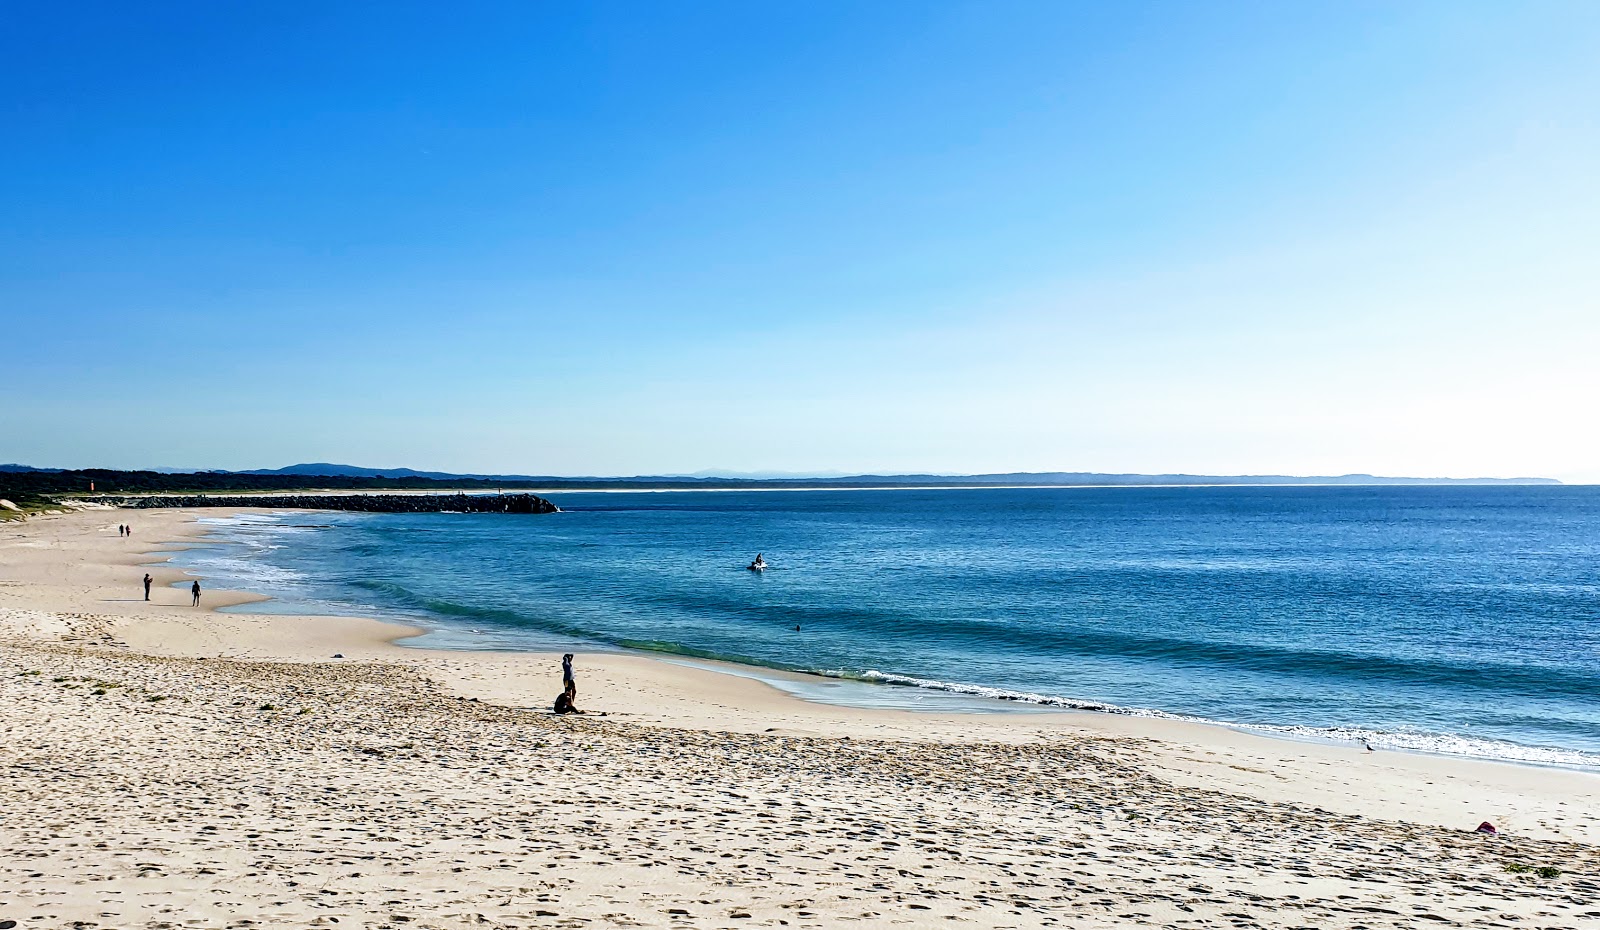 Fotografie cu Forster Beach cu plajă spațioasă